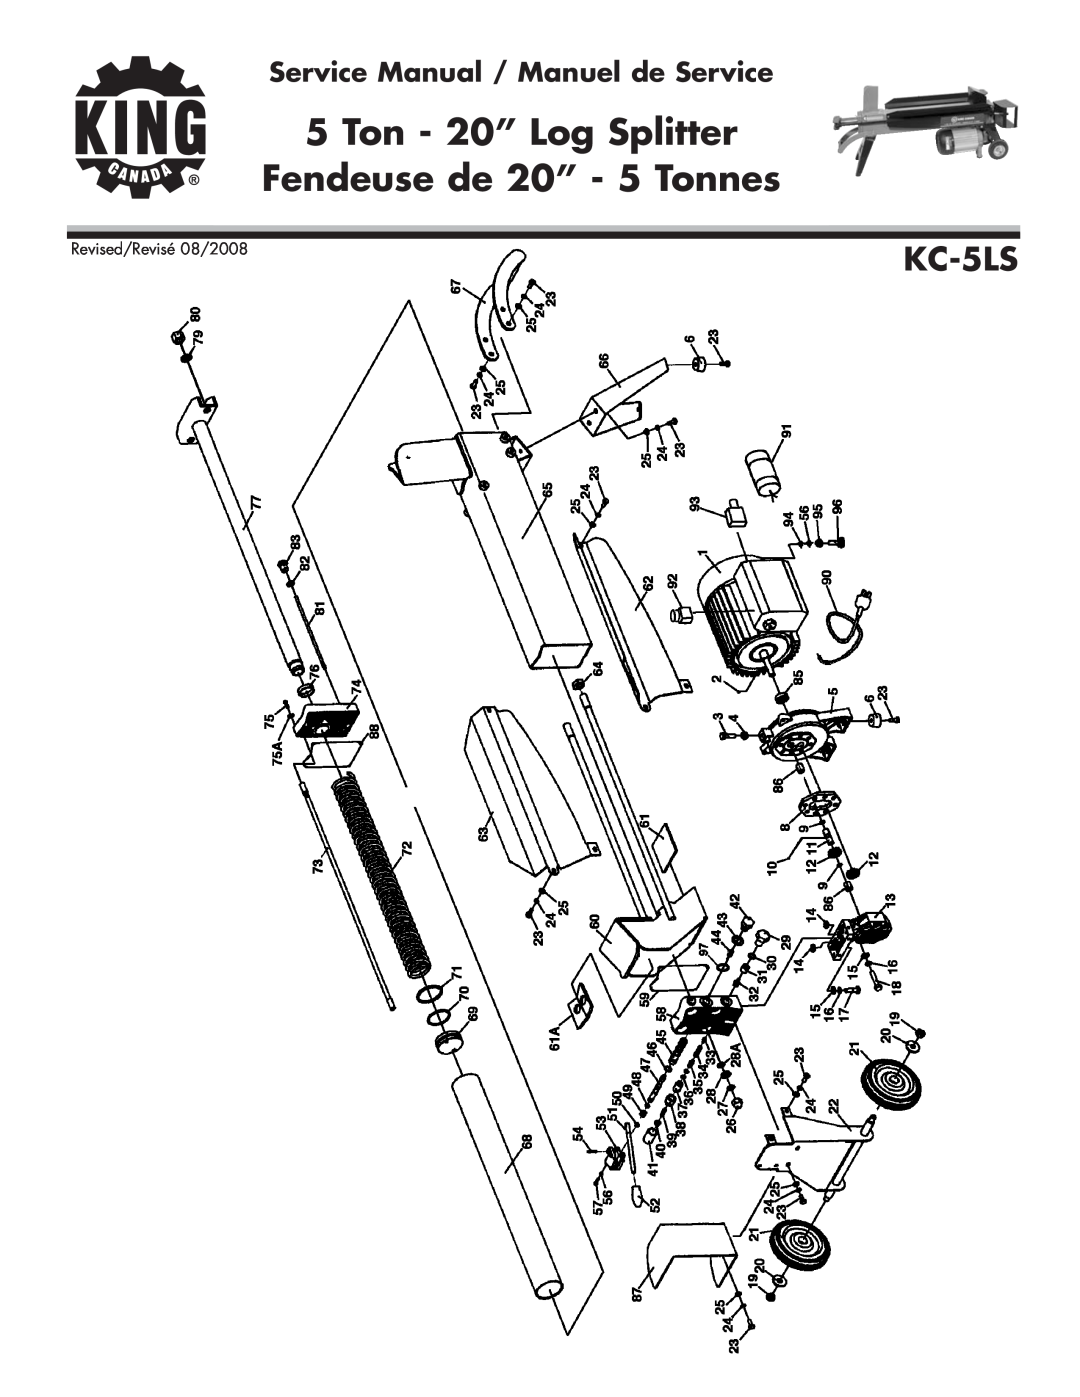 King Canada KC-5LS service manual Ton - 20” Log Splitter, Fendeuse de 20” - 5 Tonnes, Revised/Revisé 08/2008 